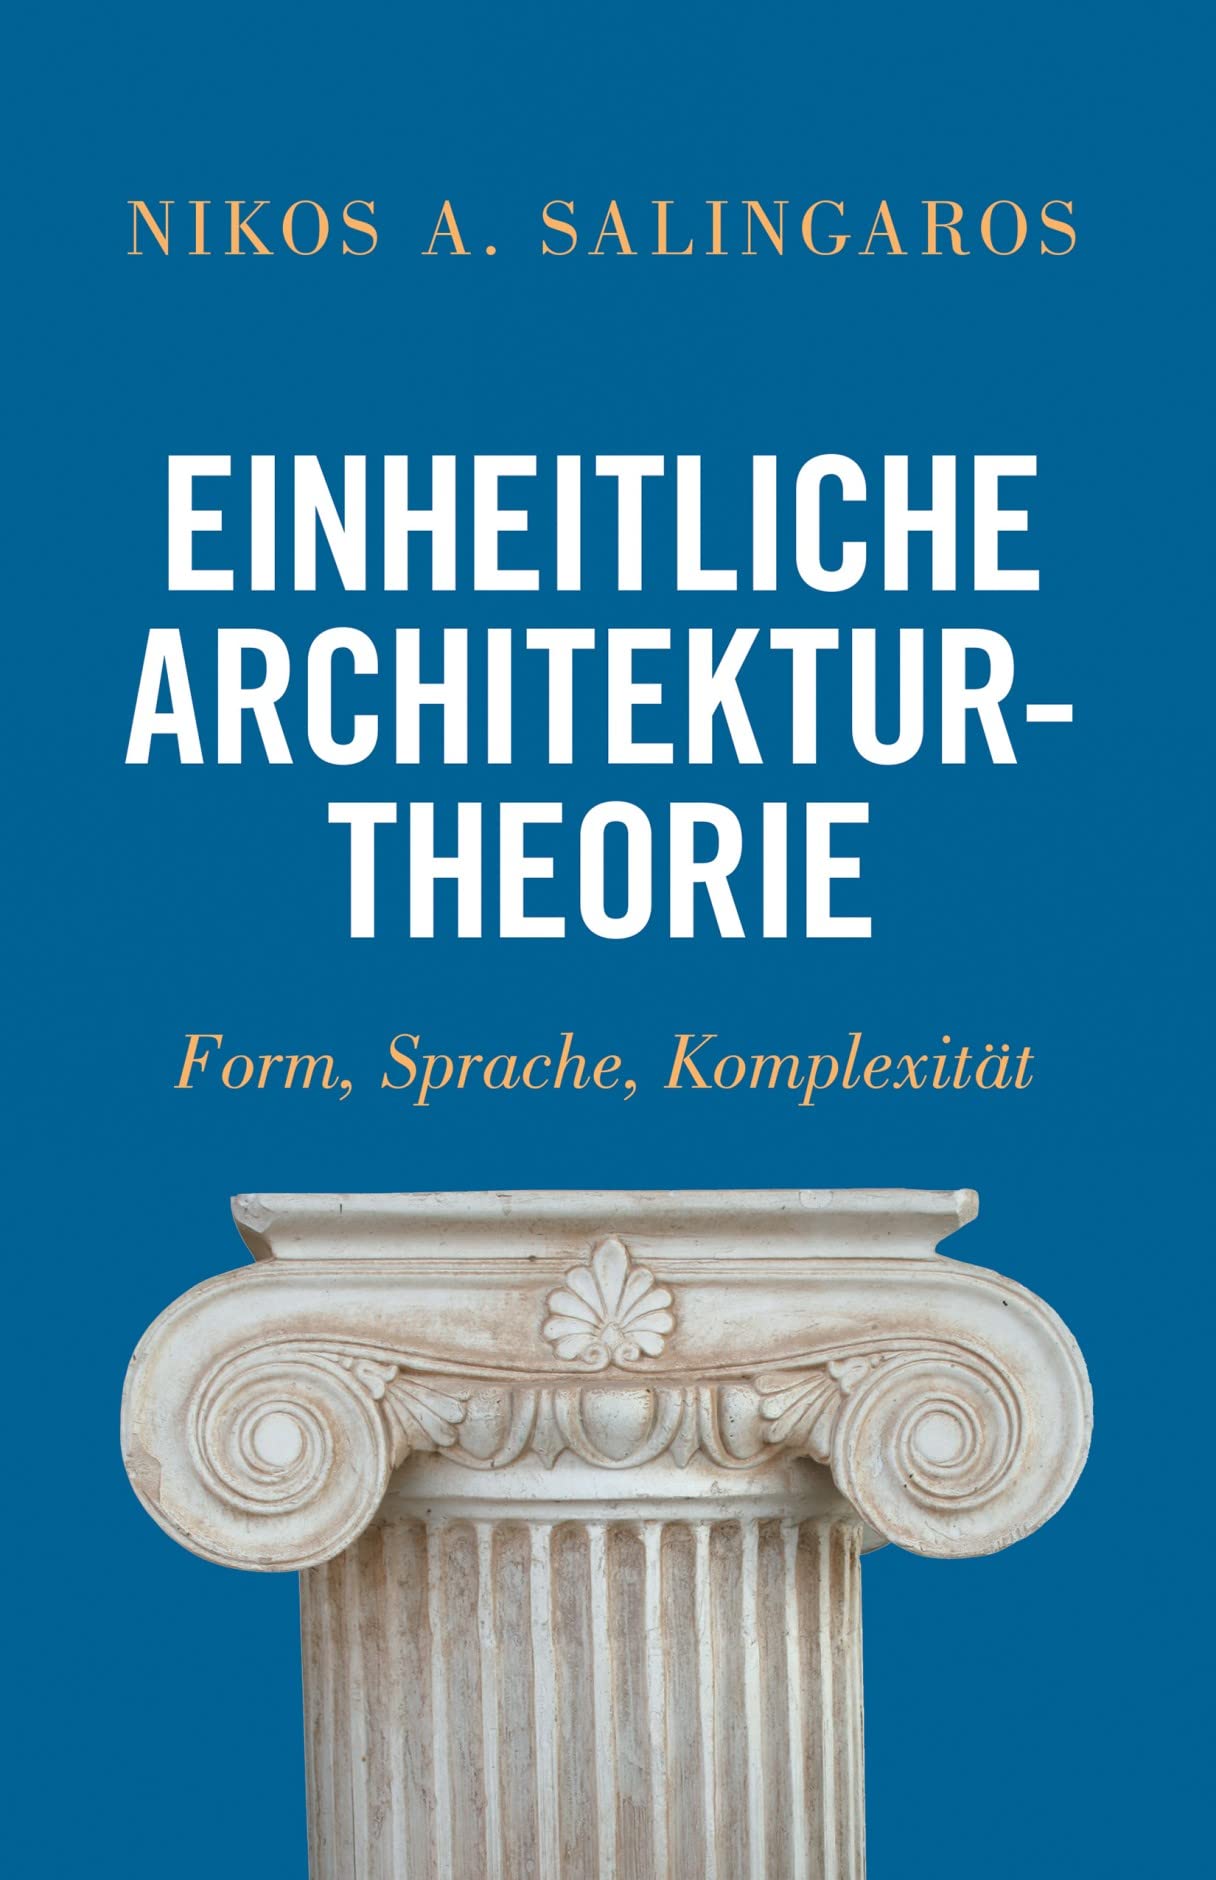 Einheitliche Architekturtheorie: Form, Sprache, Komplexität (German Edition)